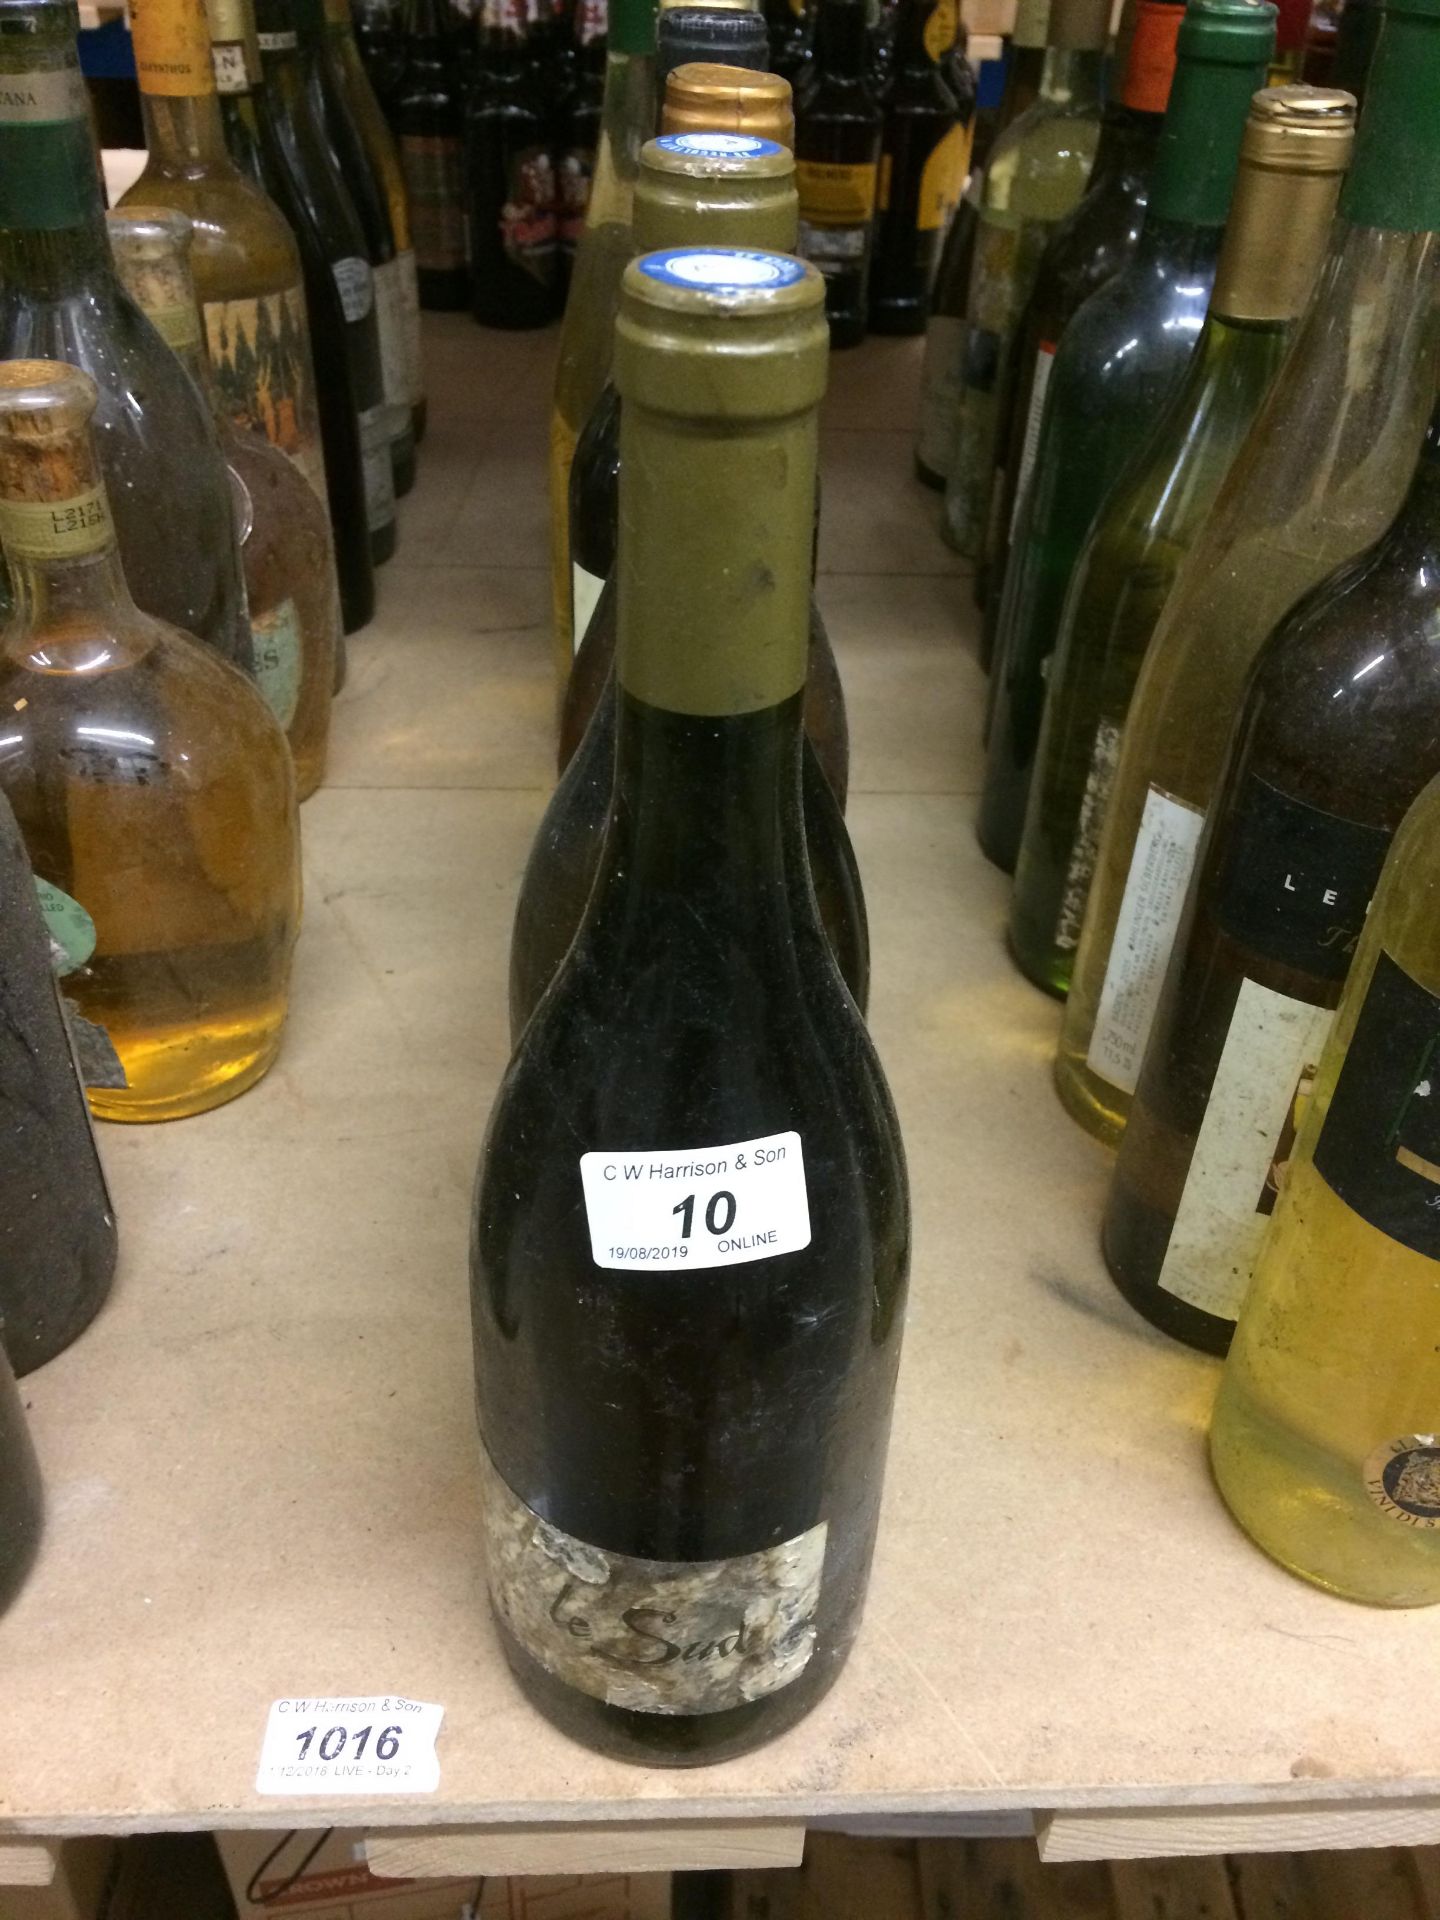 10 x assorted 750ml bottles of white wine - Camino Del Sur, Les Vigneaux, August Hauber etc.